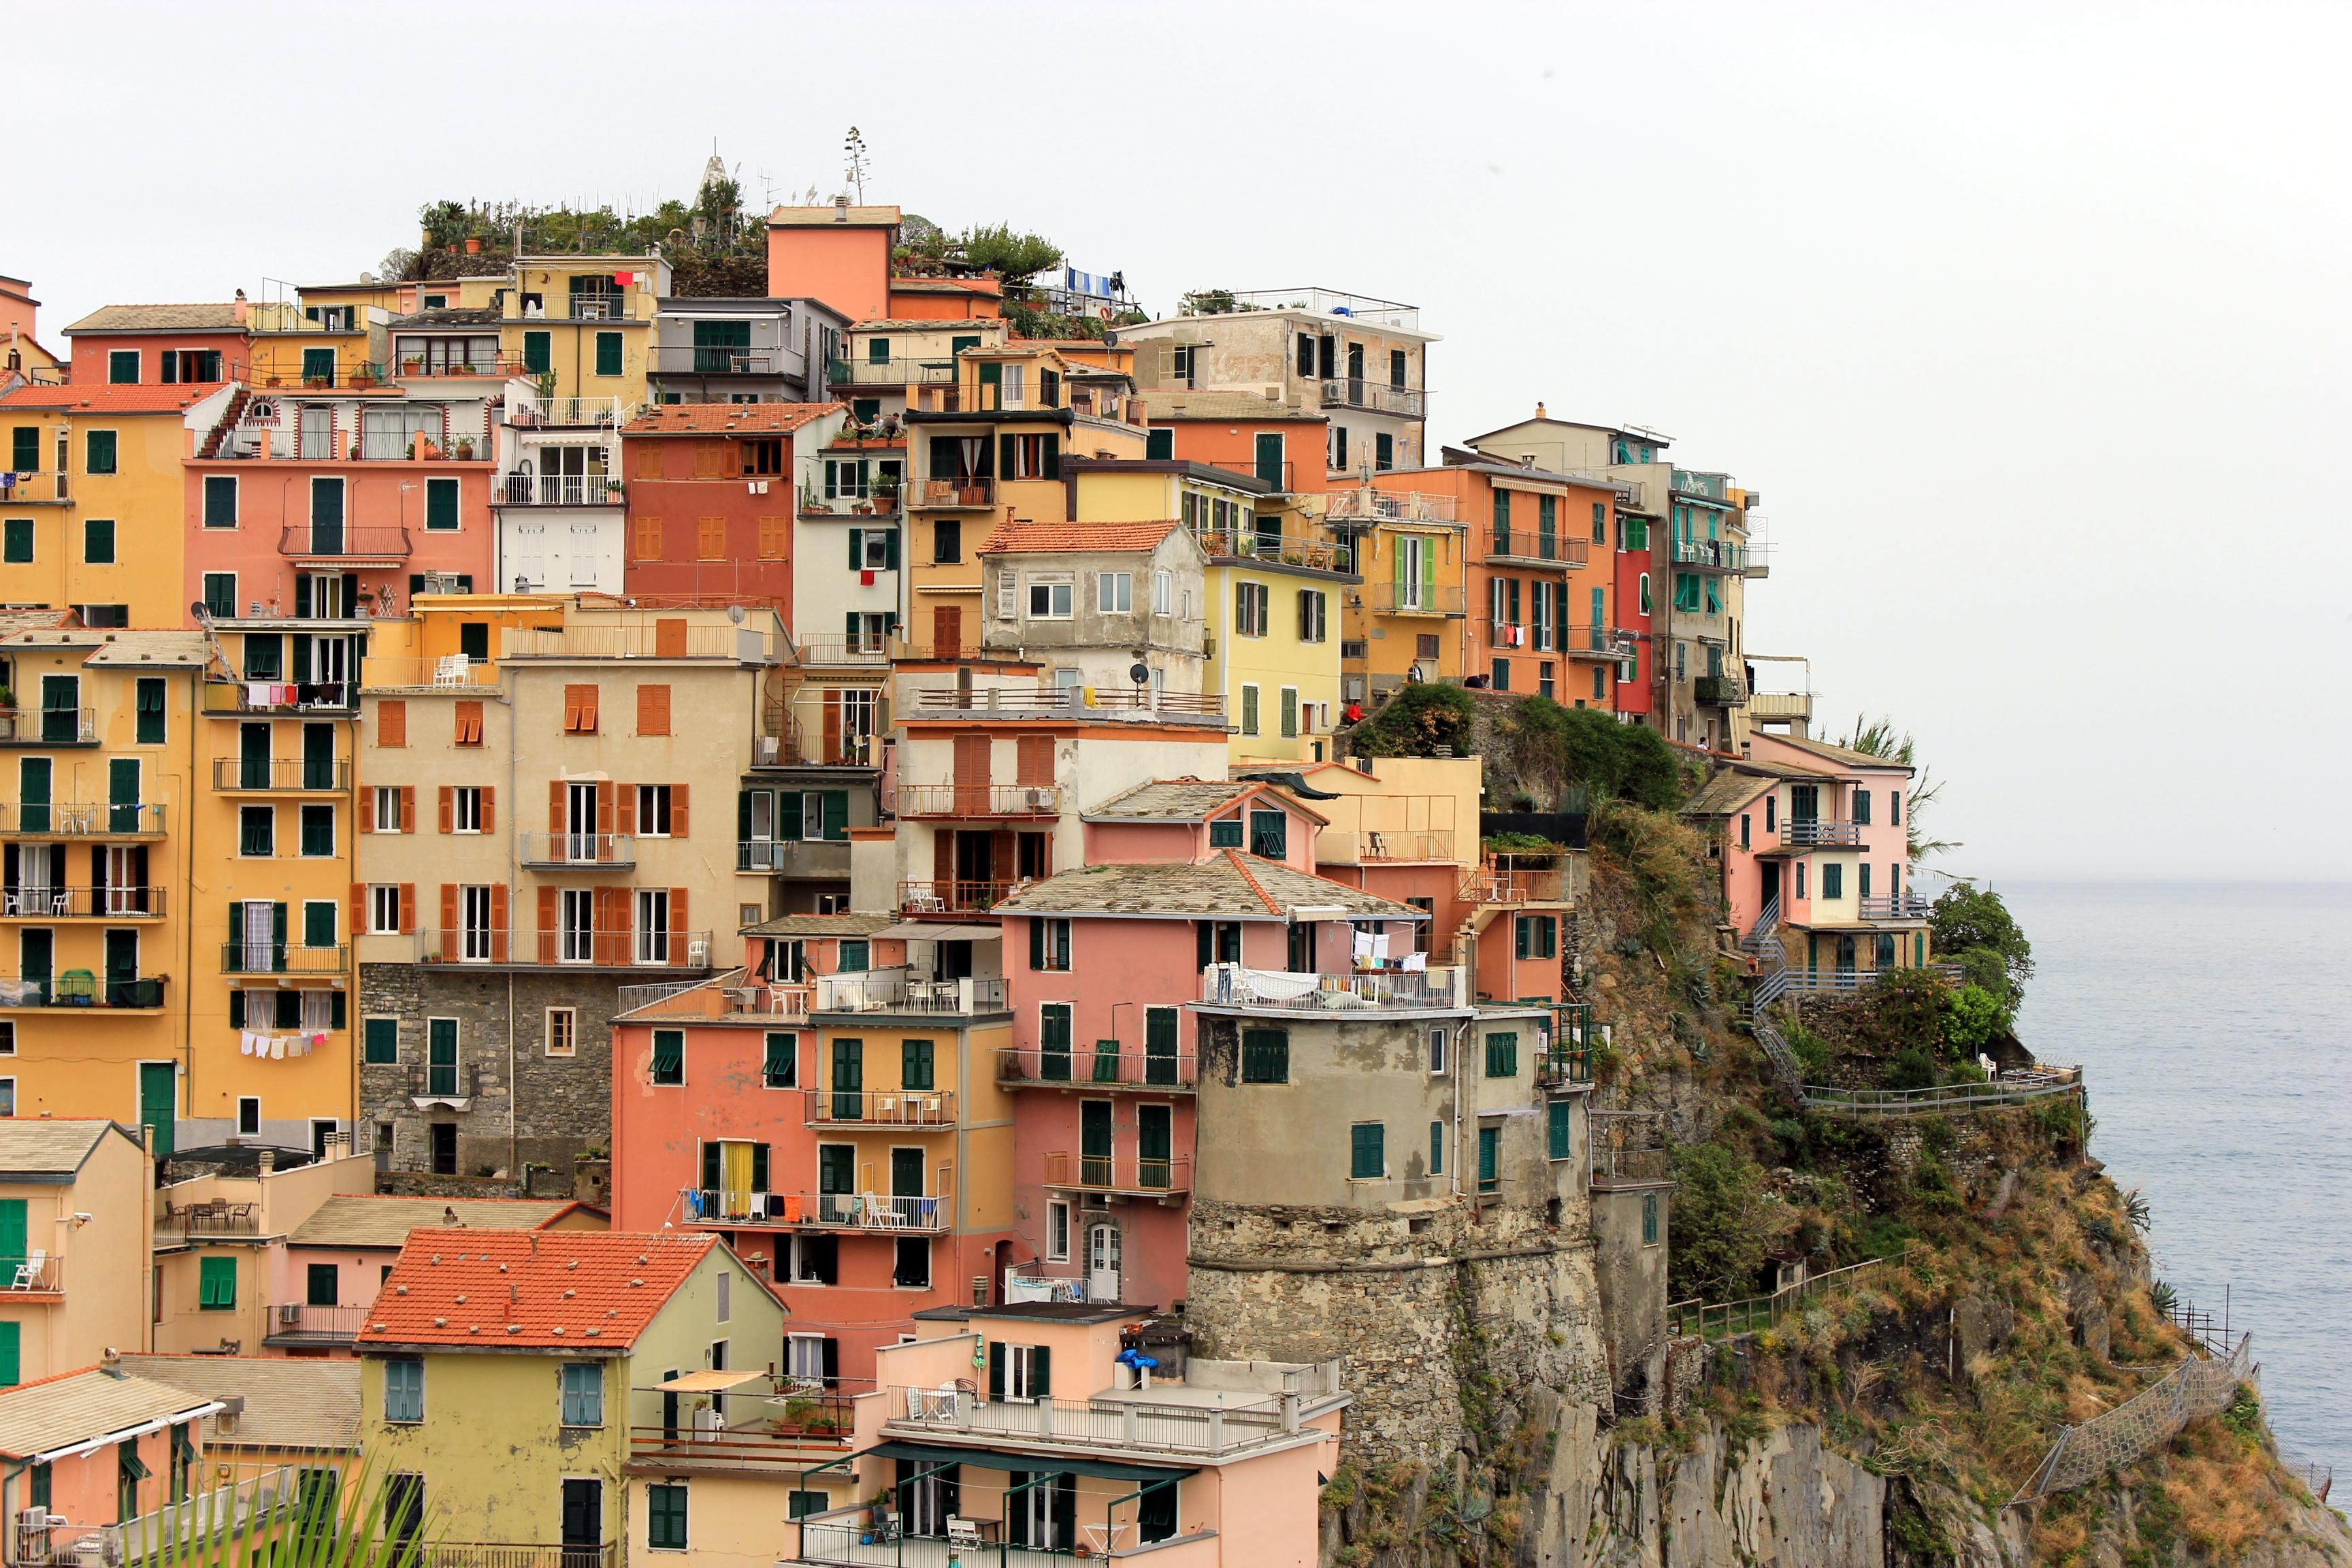 Ich schaff das dieses Jahr noch mit meiner neuen Blogkategorie! Inspirierendste Reiseziele! #italien #cinque terre